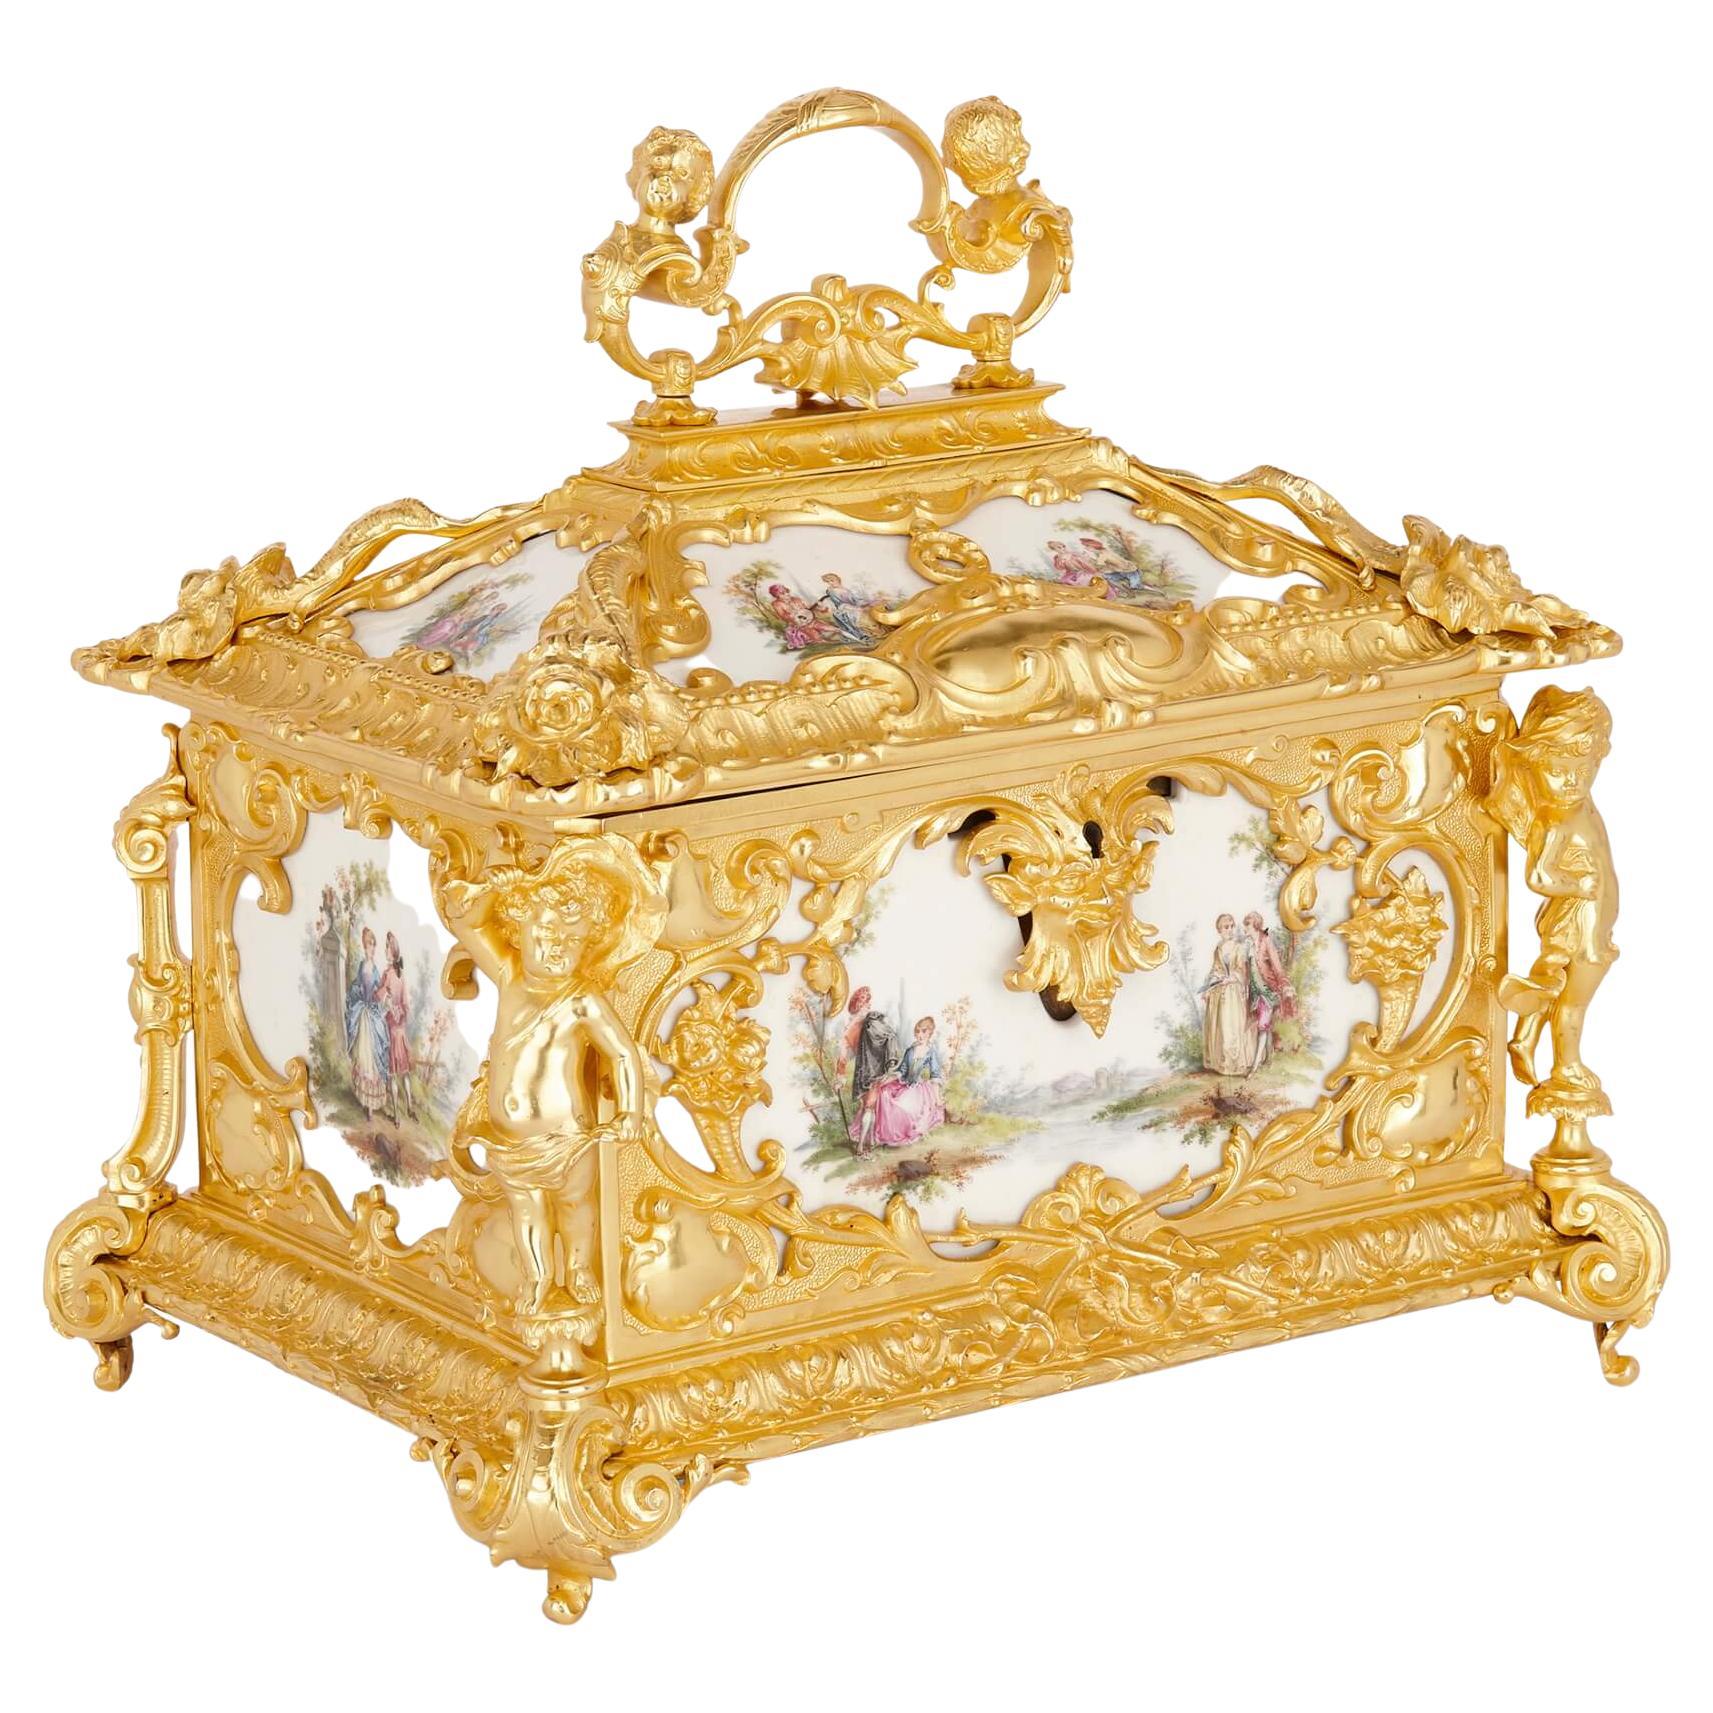 Grand coffret décoratif en bronze doré et porcelaine KPM Porcelain de style rococo